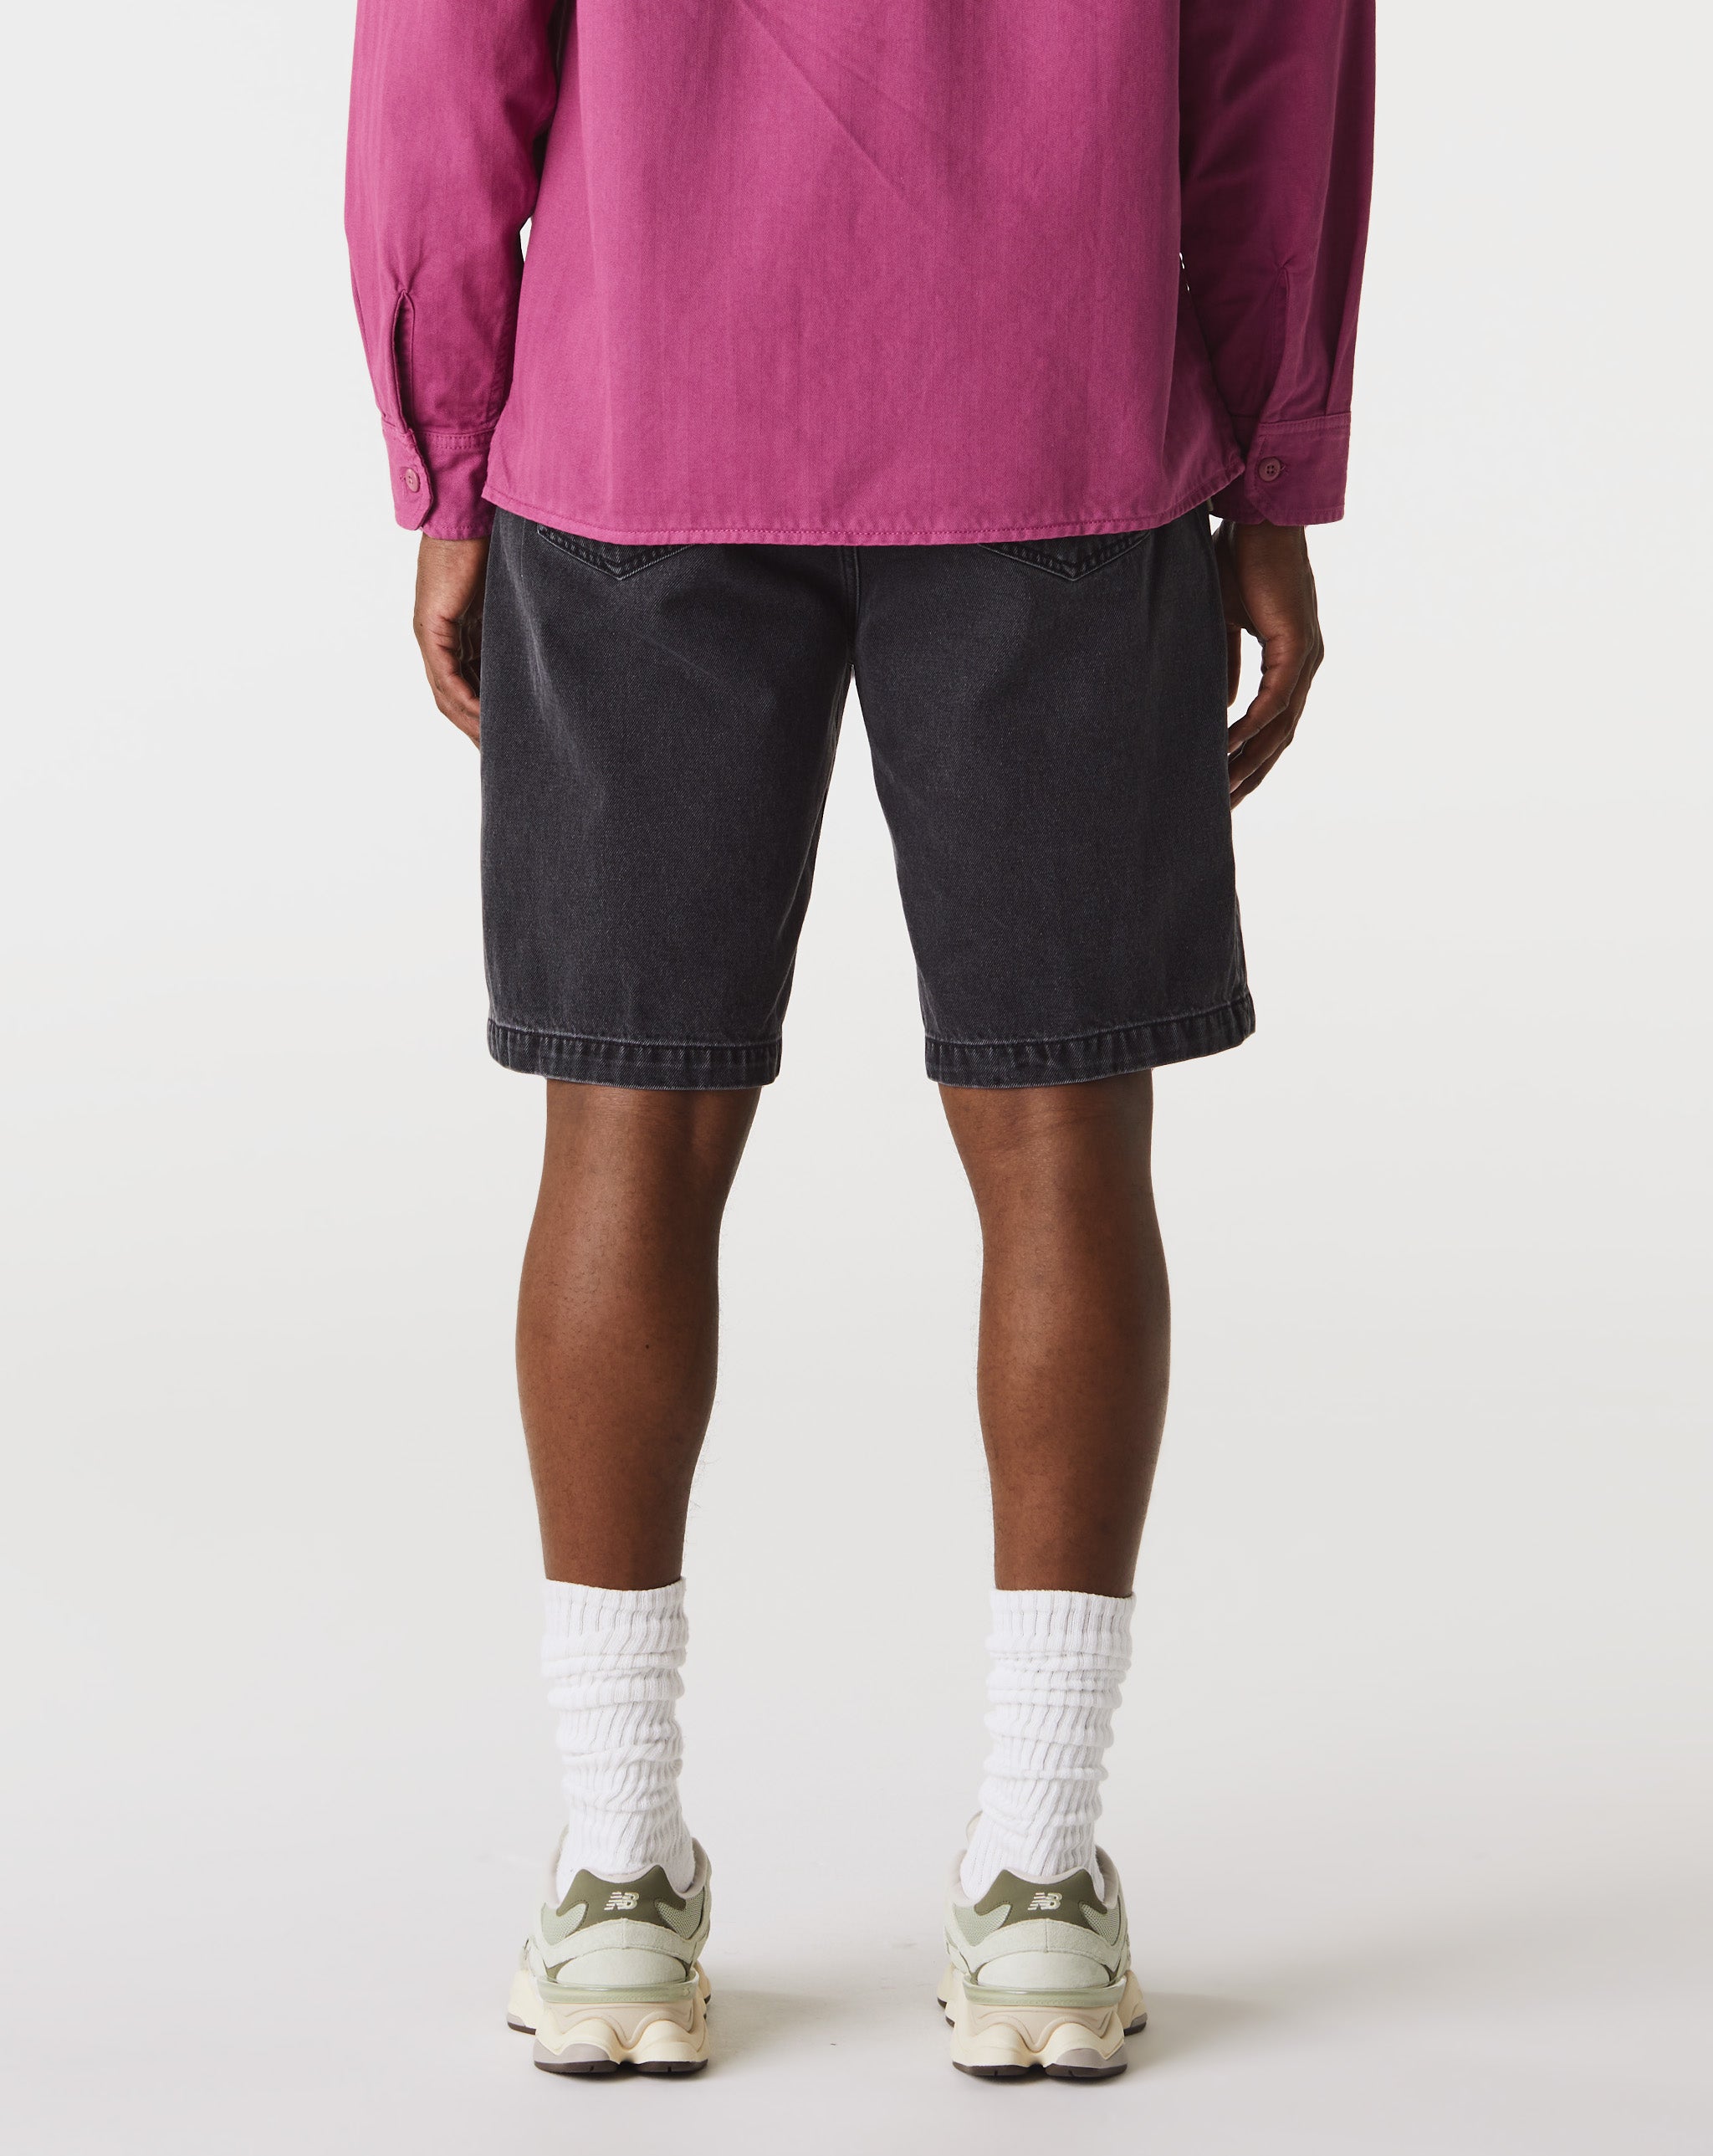 Carhartt WIP Landon Shorts  - Cheap Urlfreeze Jordan outlet